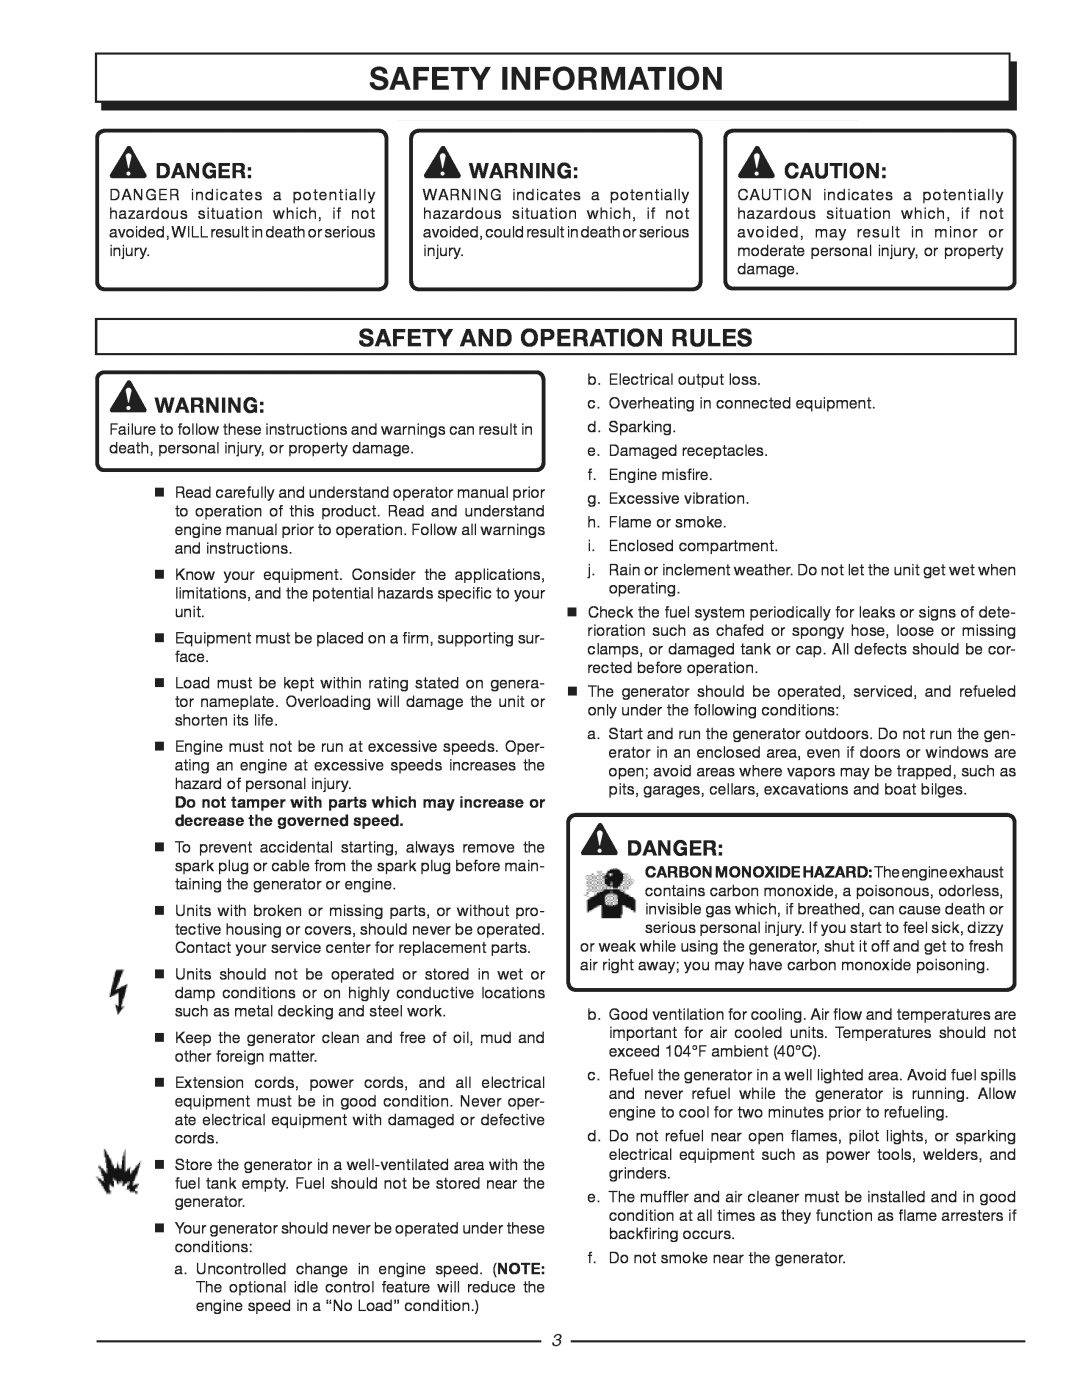 Homelite HG3510 manuel dutilisation safety information, Safety And Operation Rules, danger, Danger 